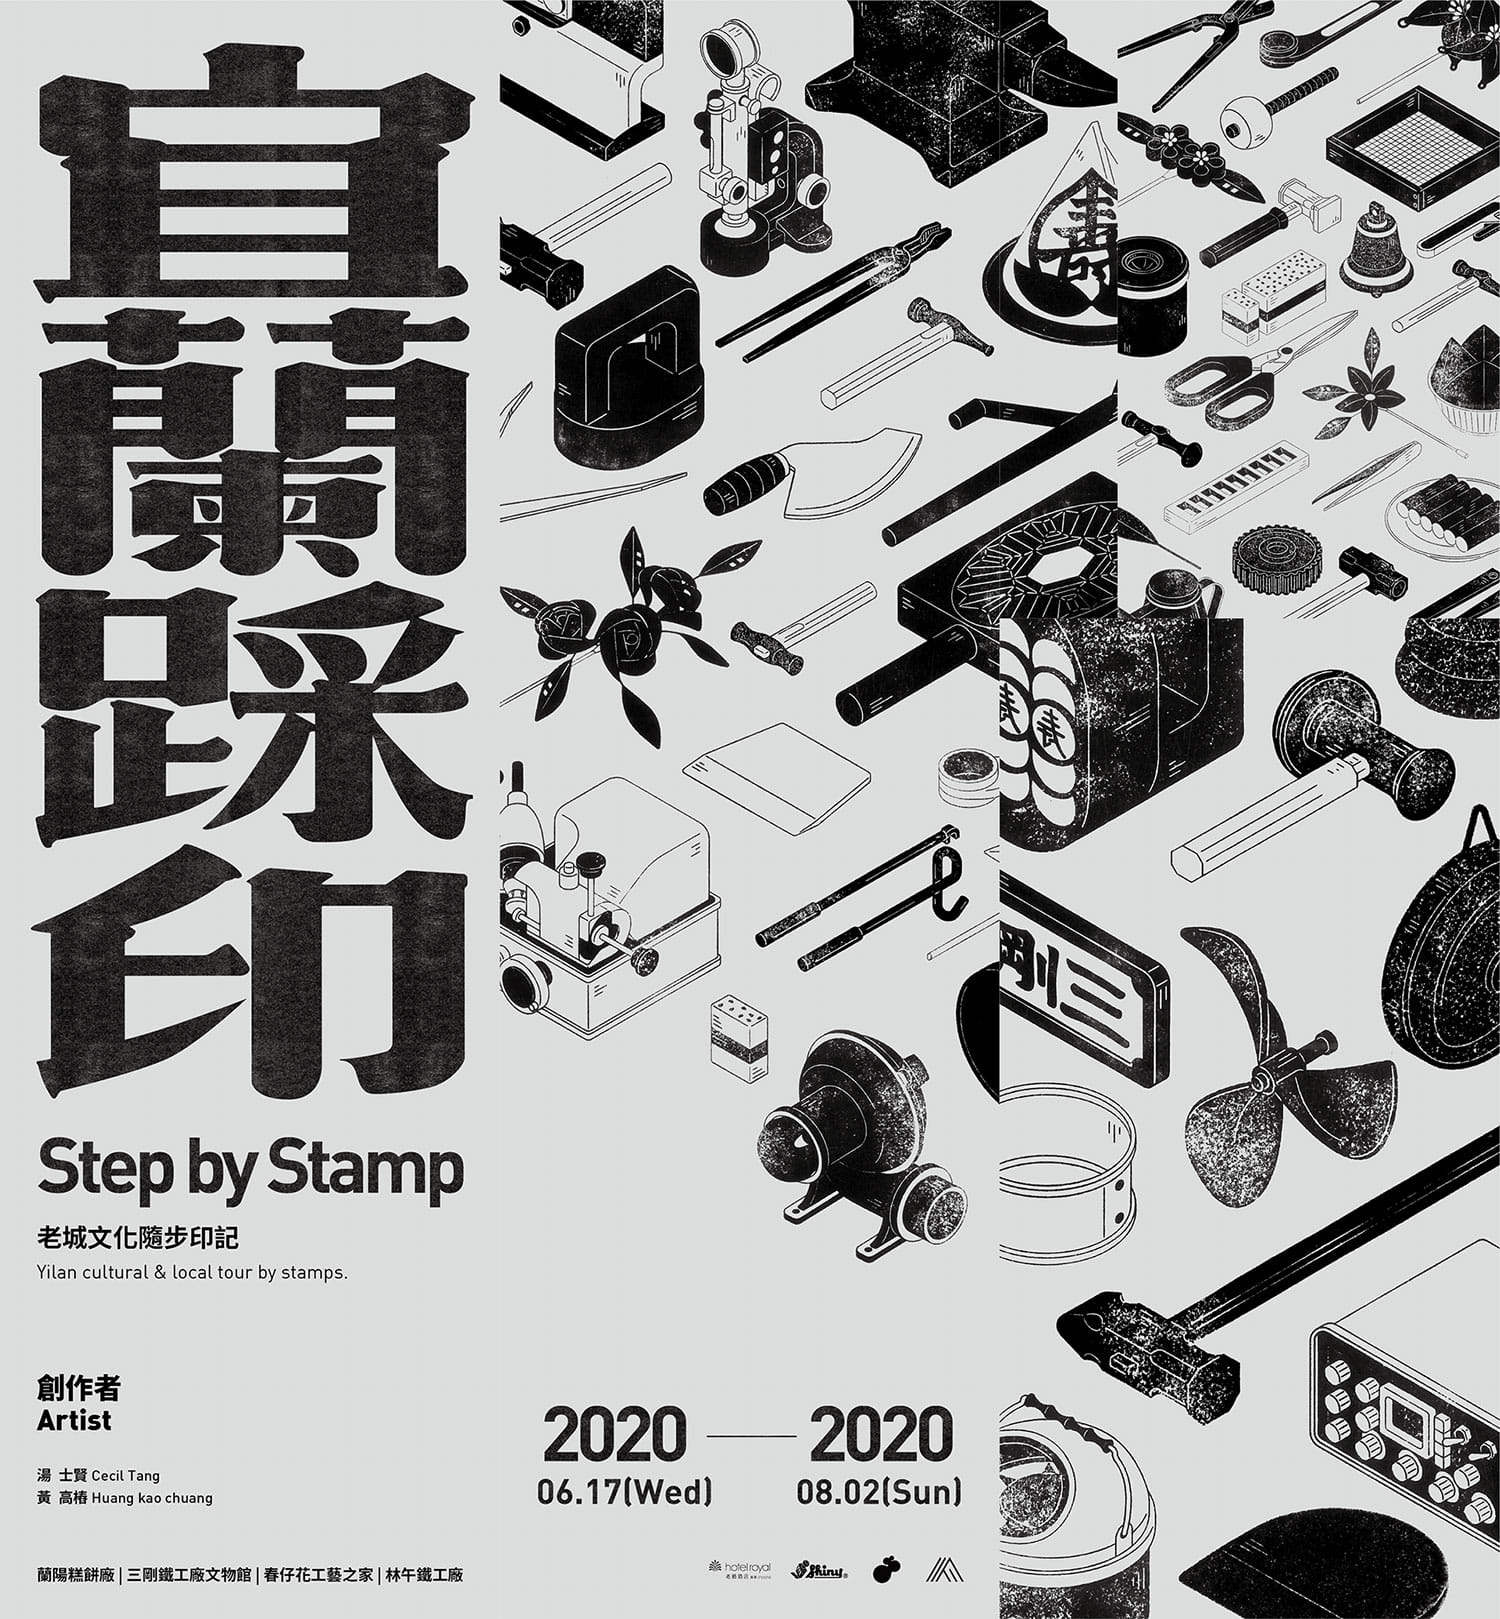 宜蘭踩印 Step by Stamp